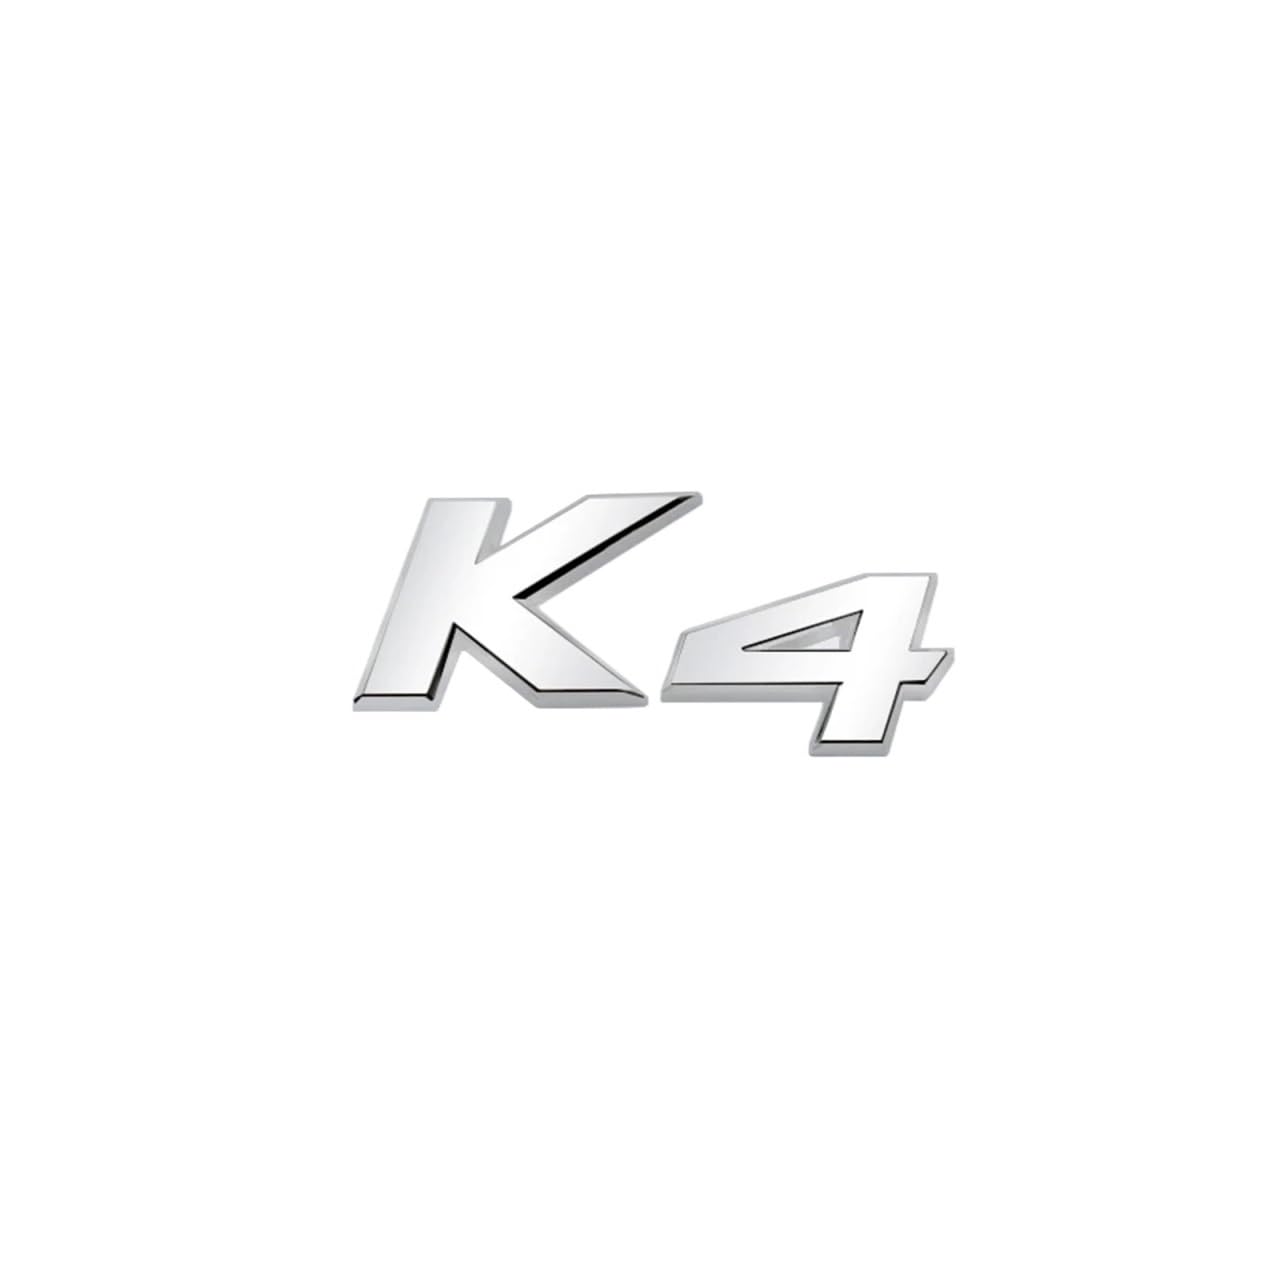 Auto-Styling Metall Auto Kofferraum Buchstaben Aufkleber Aufkleber Kompatibel mit K2 K3 K4 K5 KX7 Abzeichen Emblem Aufkleber(3) von NRUOS